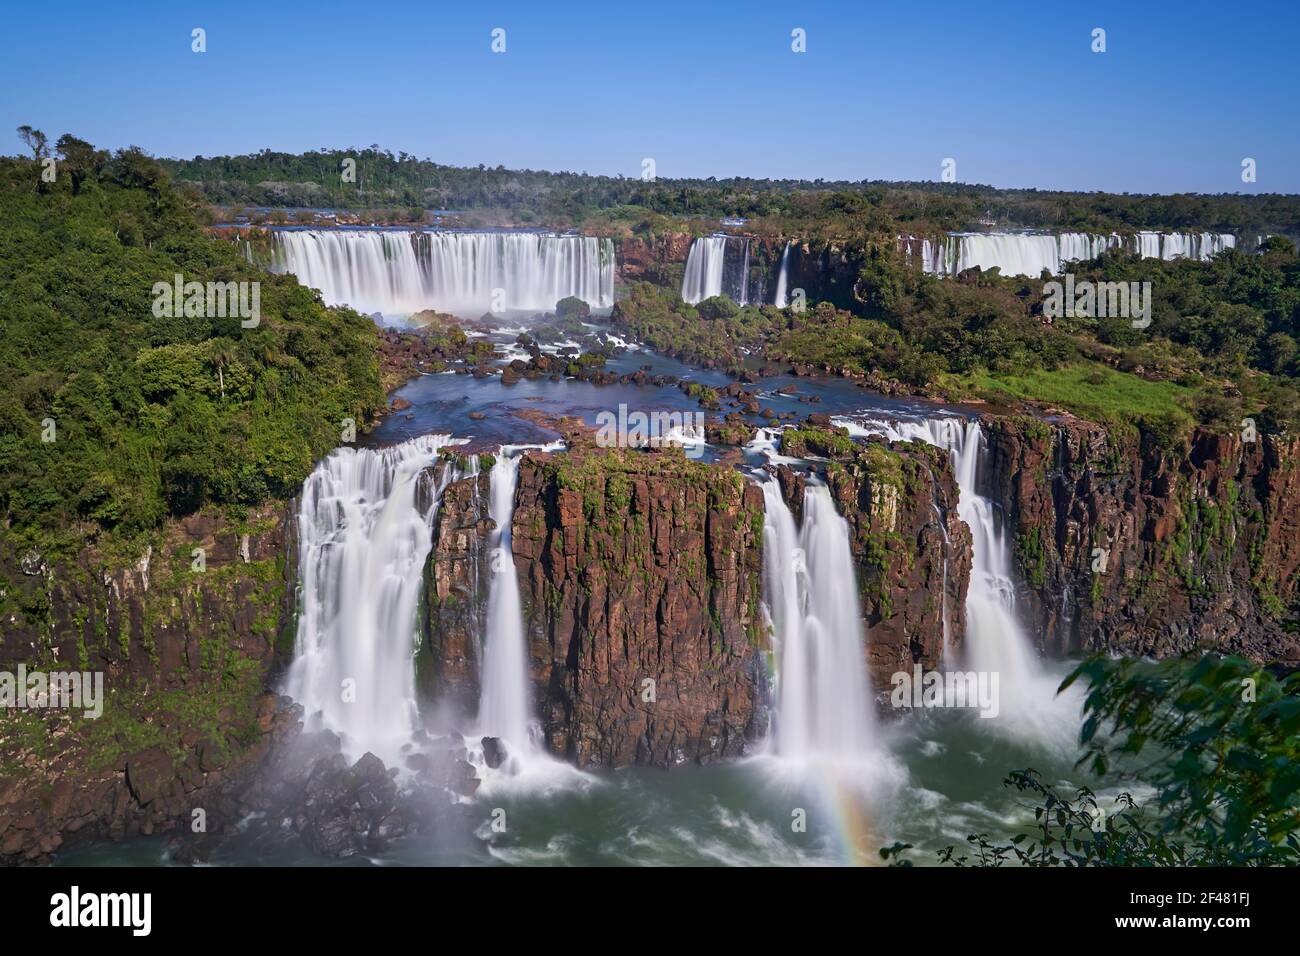 Le Cascate di Iguazu o le Cascate di Iguacu, al confine tra Argentina e Brasile, sono le cascate più grandi del mondo. Cascata molto alta con acqua bianca in b Foto Stock